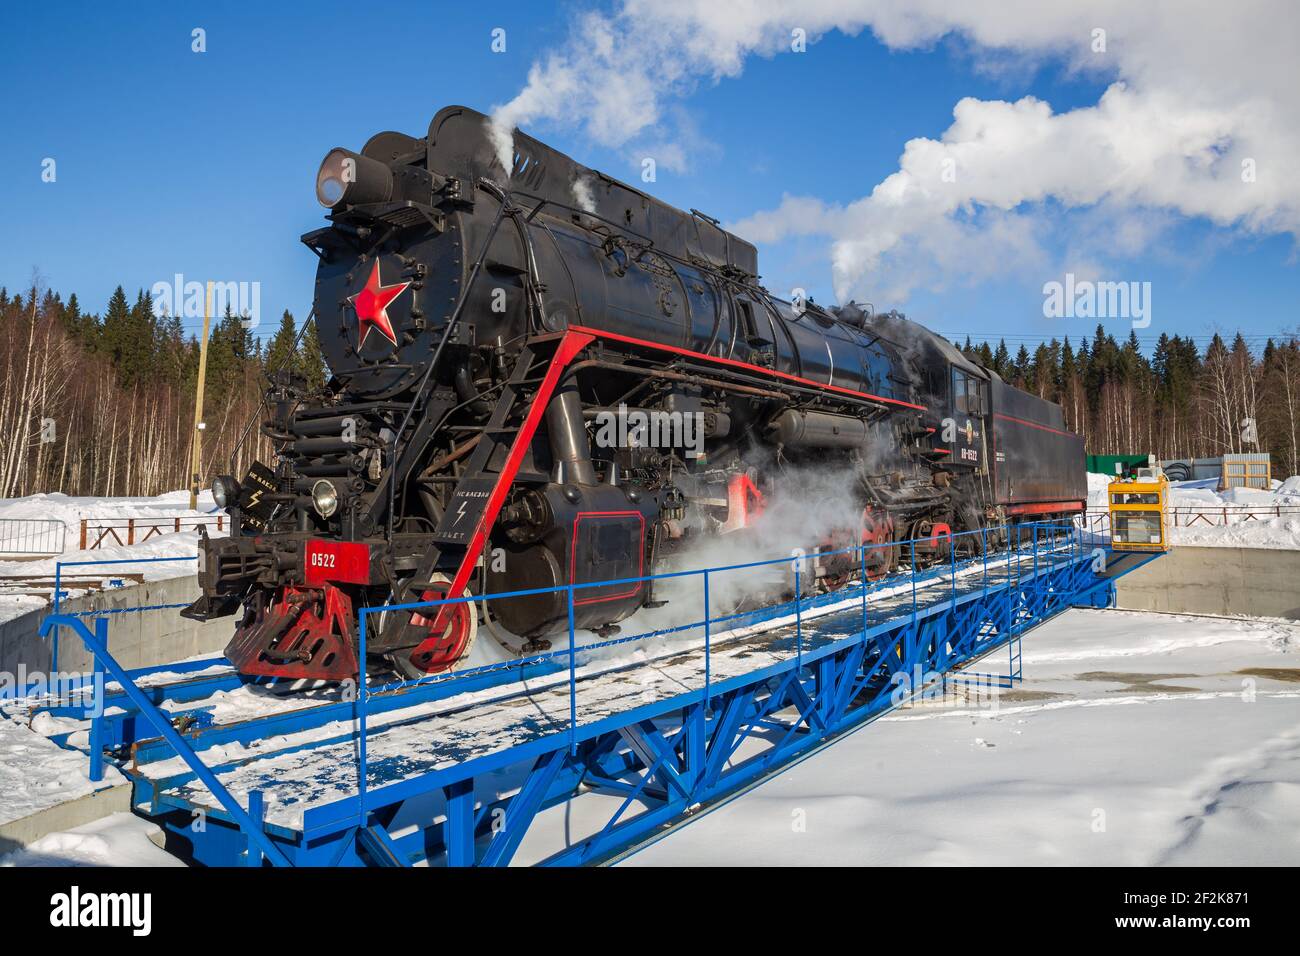 RUSKEALA, RUSSIA - 10 MARZO 2021: Locomotiva a vapore LV-0522 sul giradischi della stazione Ruskeala Mountain Park di Carelia Foto Stock